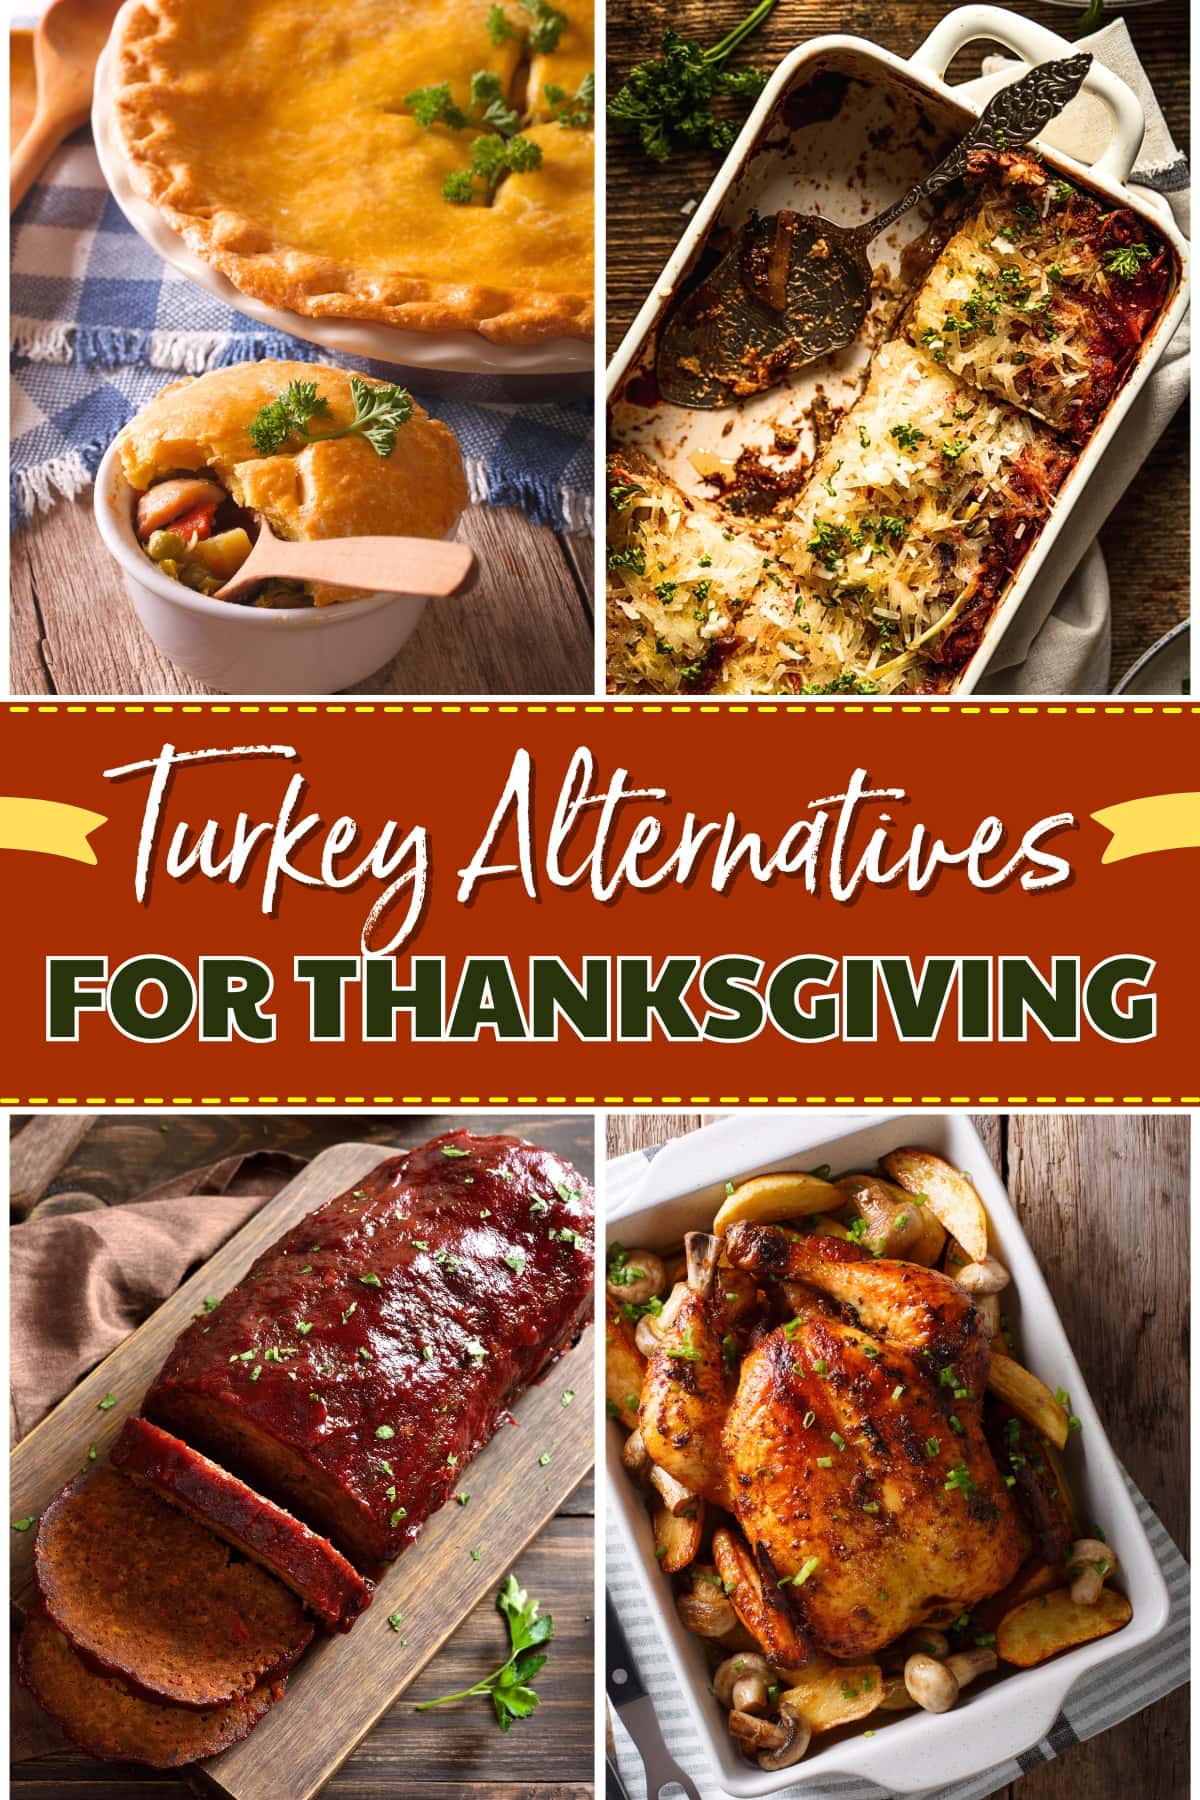 Turkey Alternatives for Thanksgiving